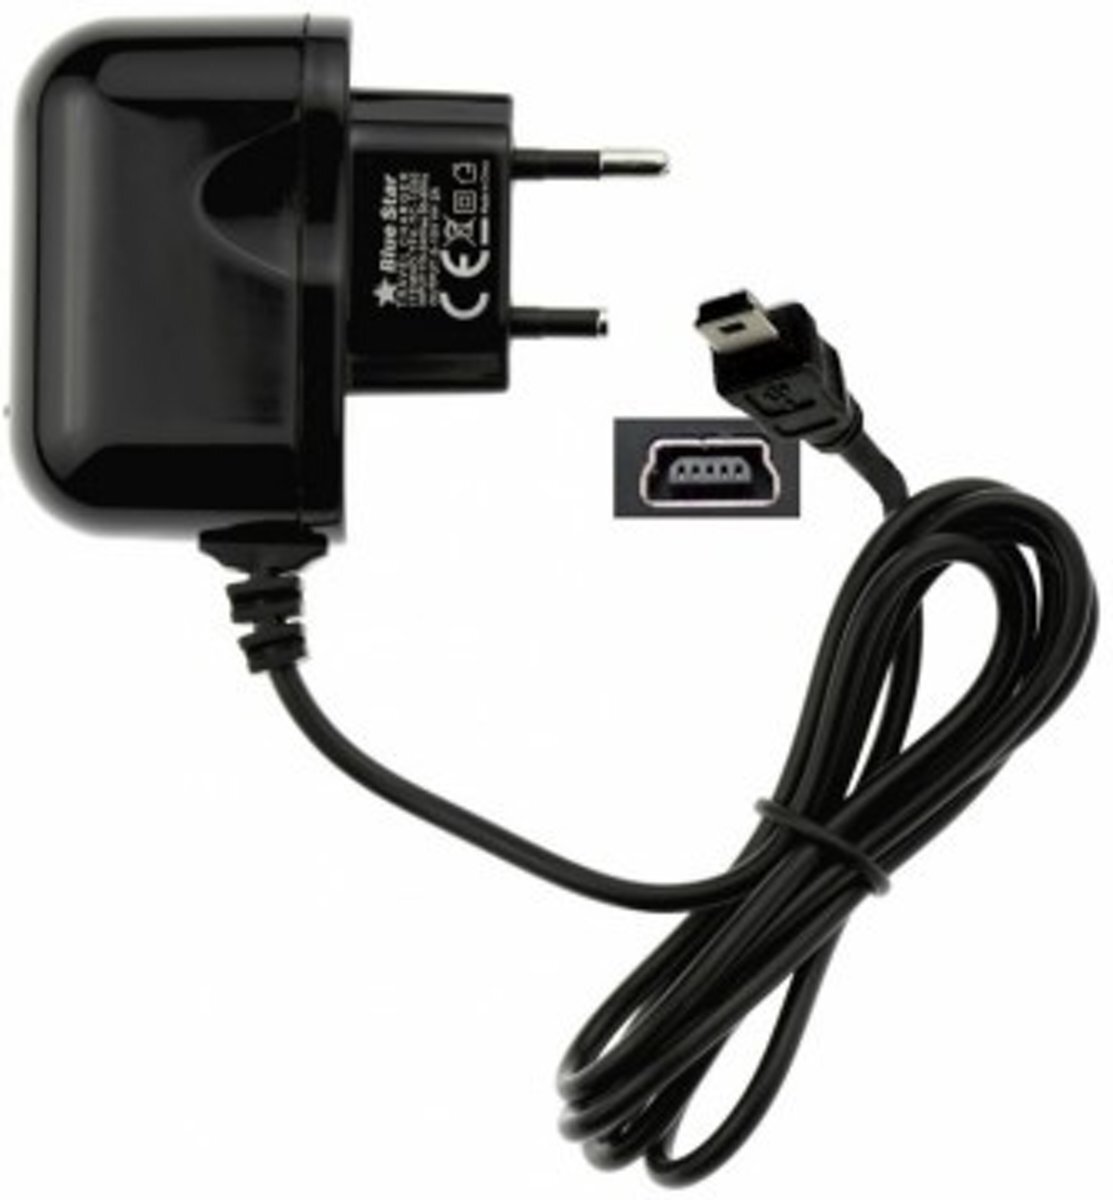 ABC-LED Oplader 220V voor TomTom GO 530 - 2 ampere lader